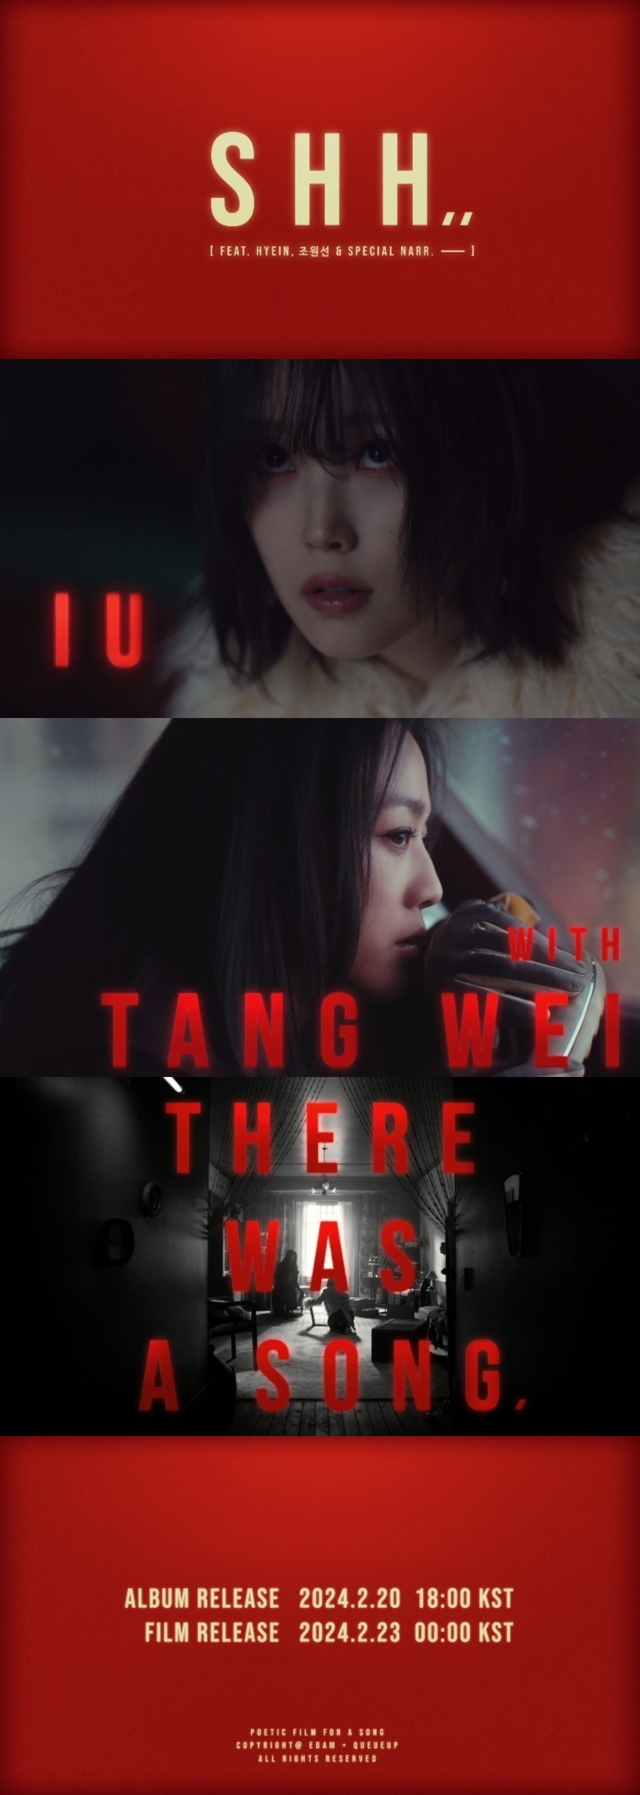 Thang Duy nhận lời đóng MV vì yêu thích IU - Ảnh 1.